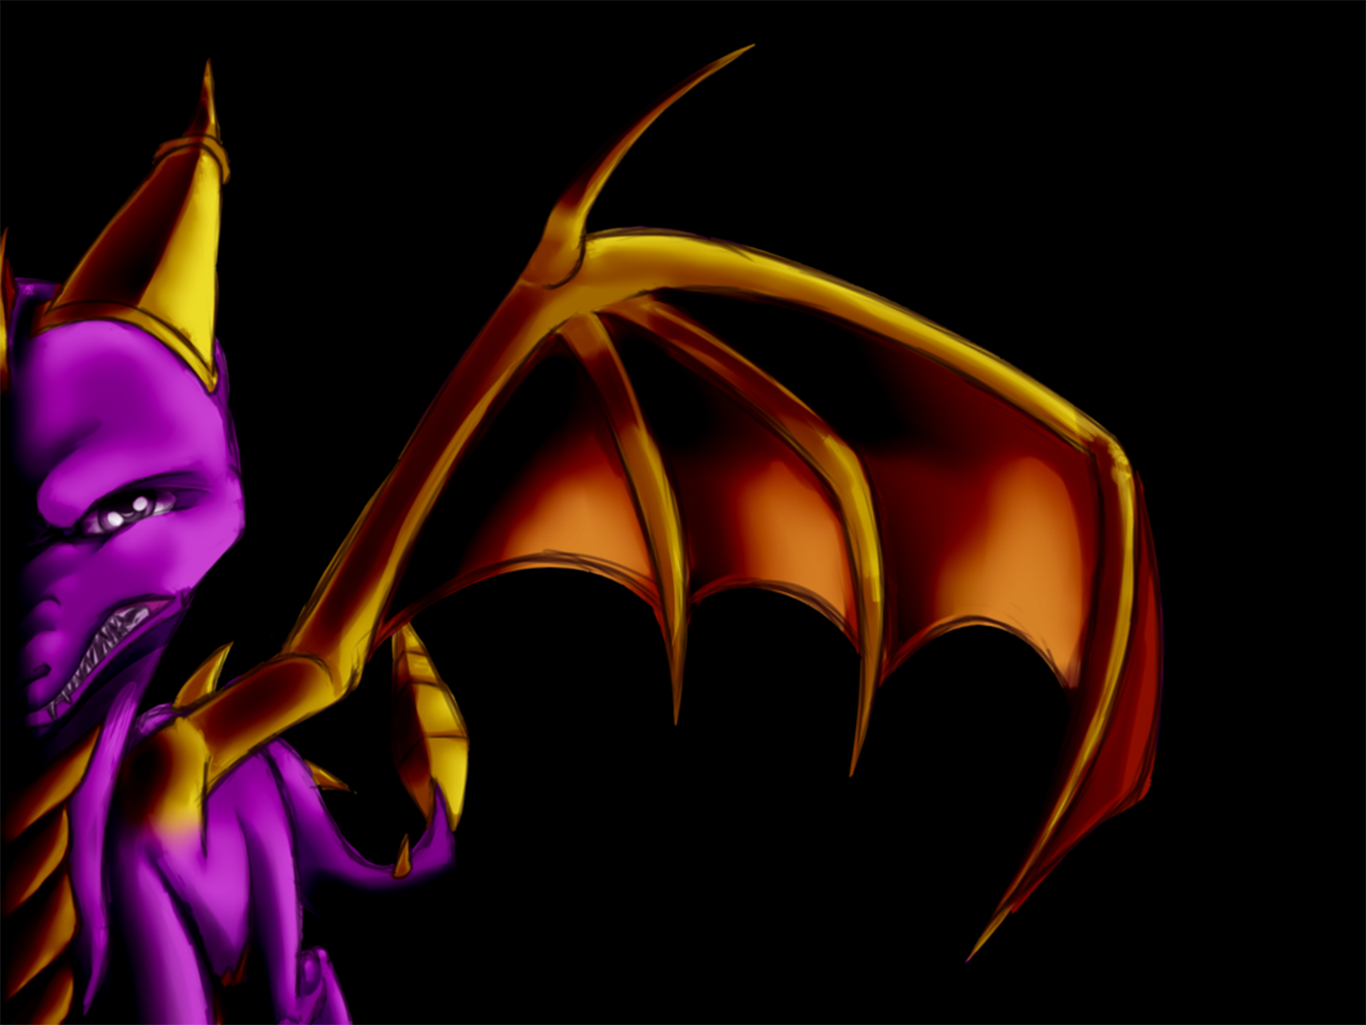 Spyro the Dragon Wallpaper by illegal-spyro-fan